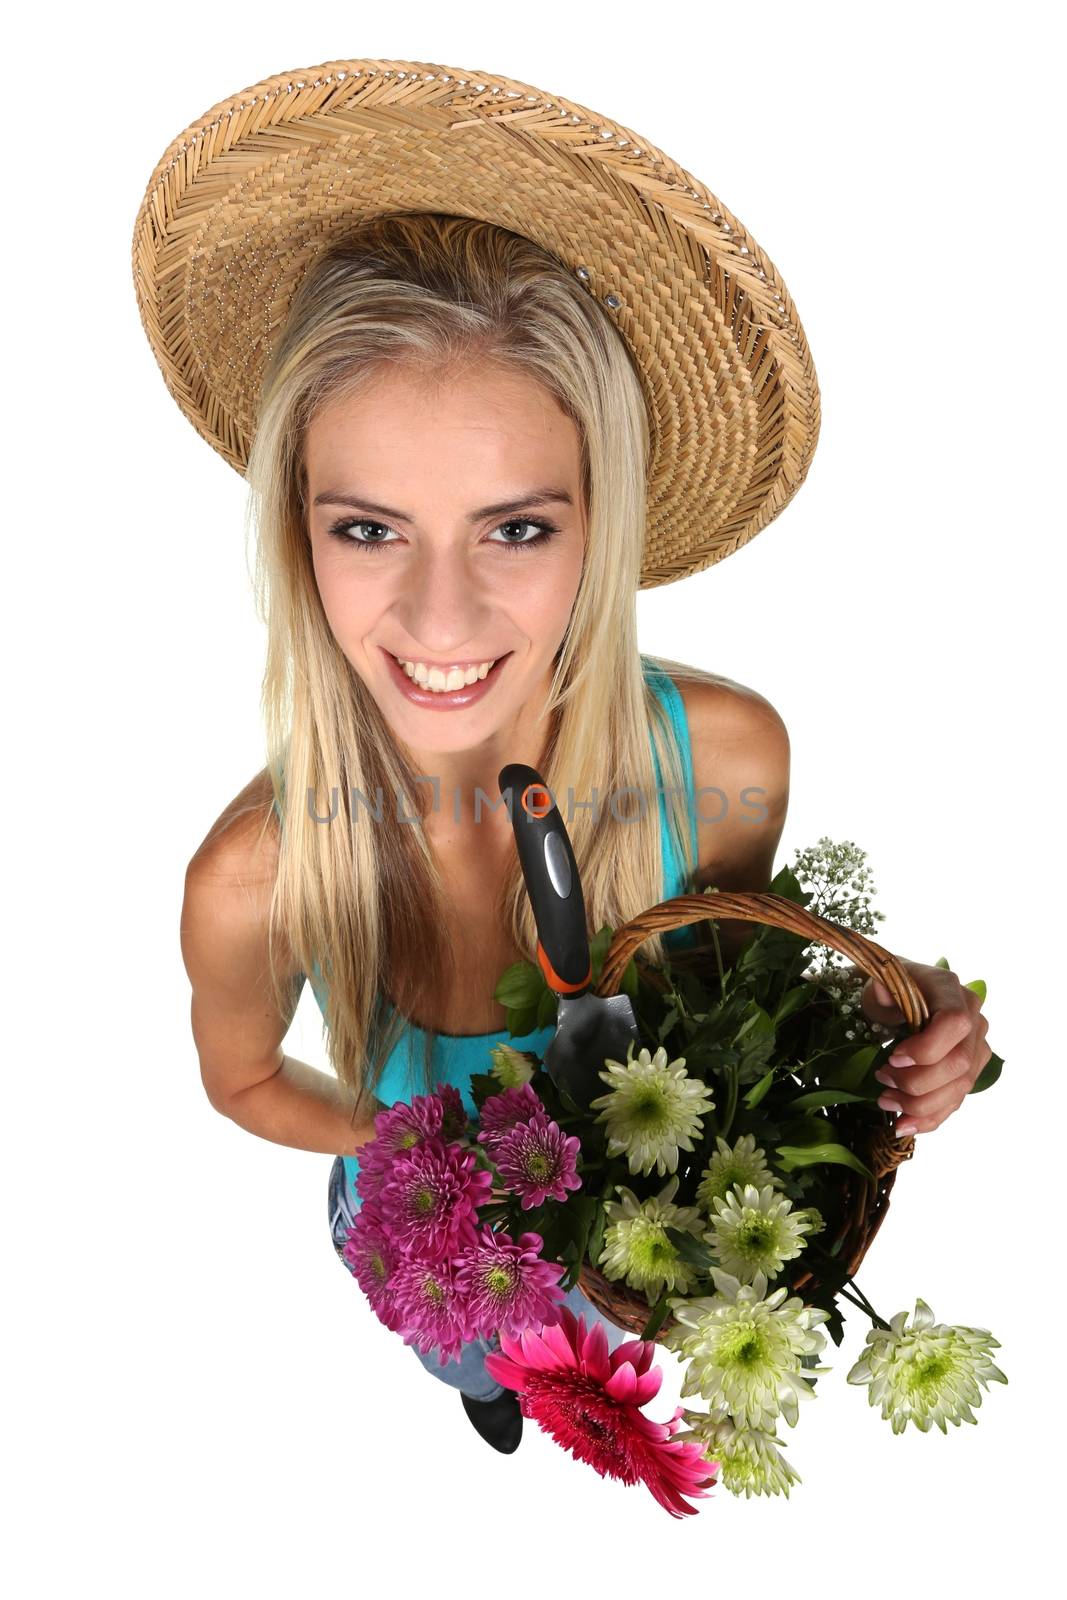 Lovely Blond Gardening Woman by fouroaks